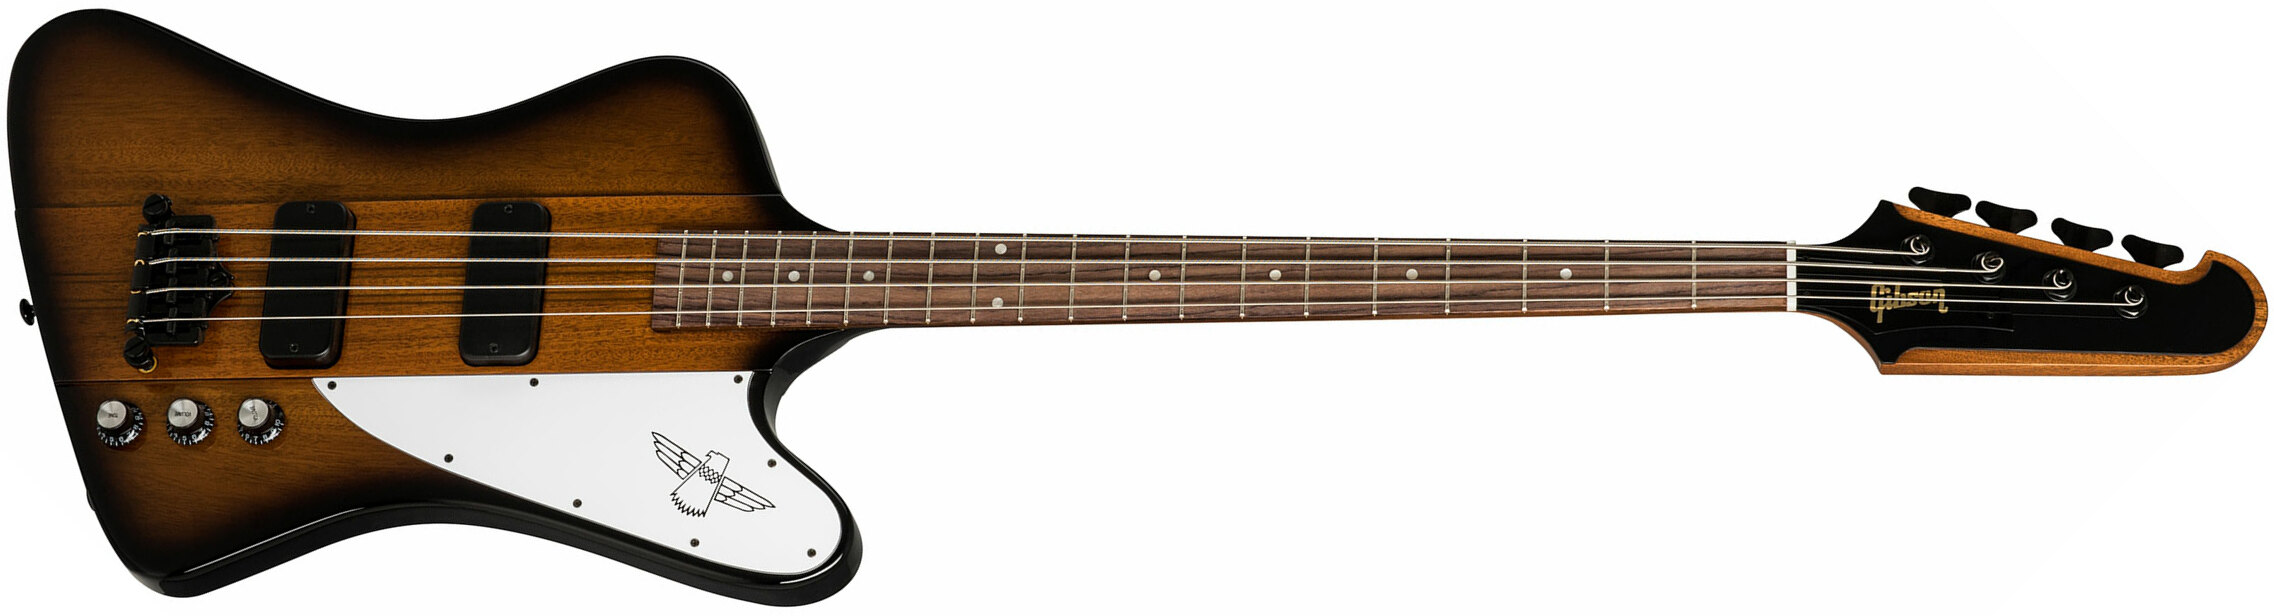 Gibson Thunderbird Bass 2019 - Vintage Sunburst - Solid body elektrische bas - Main picture